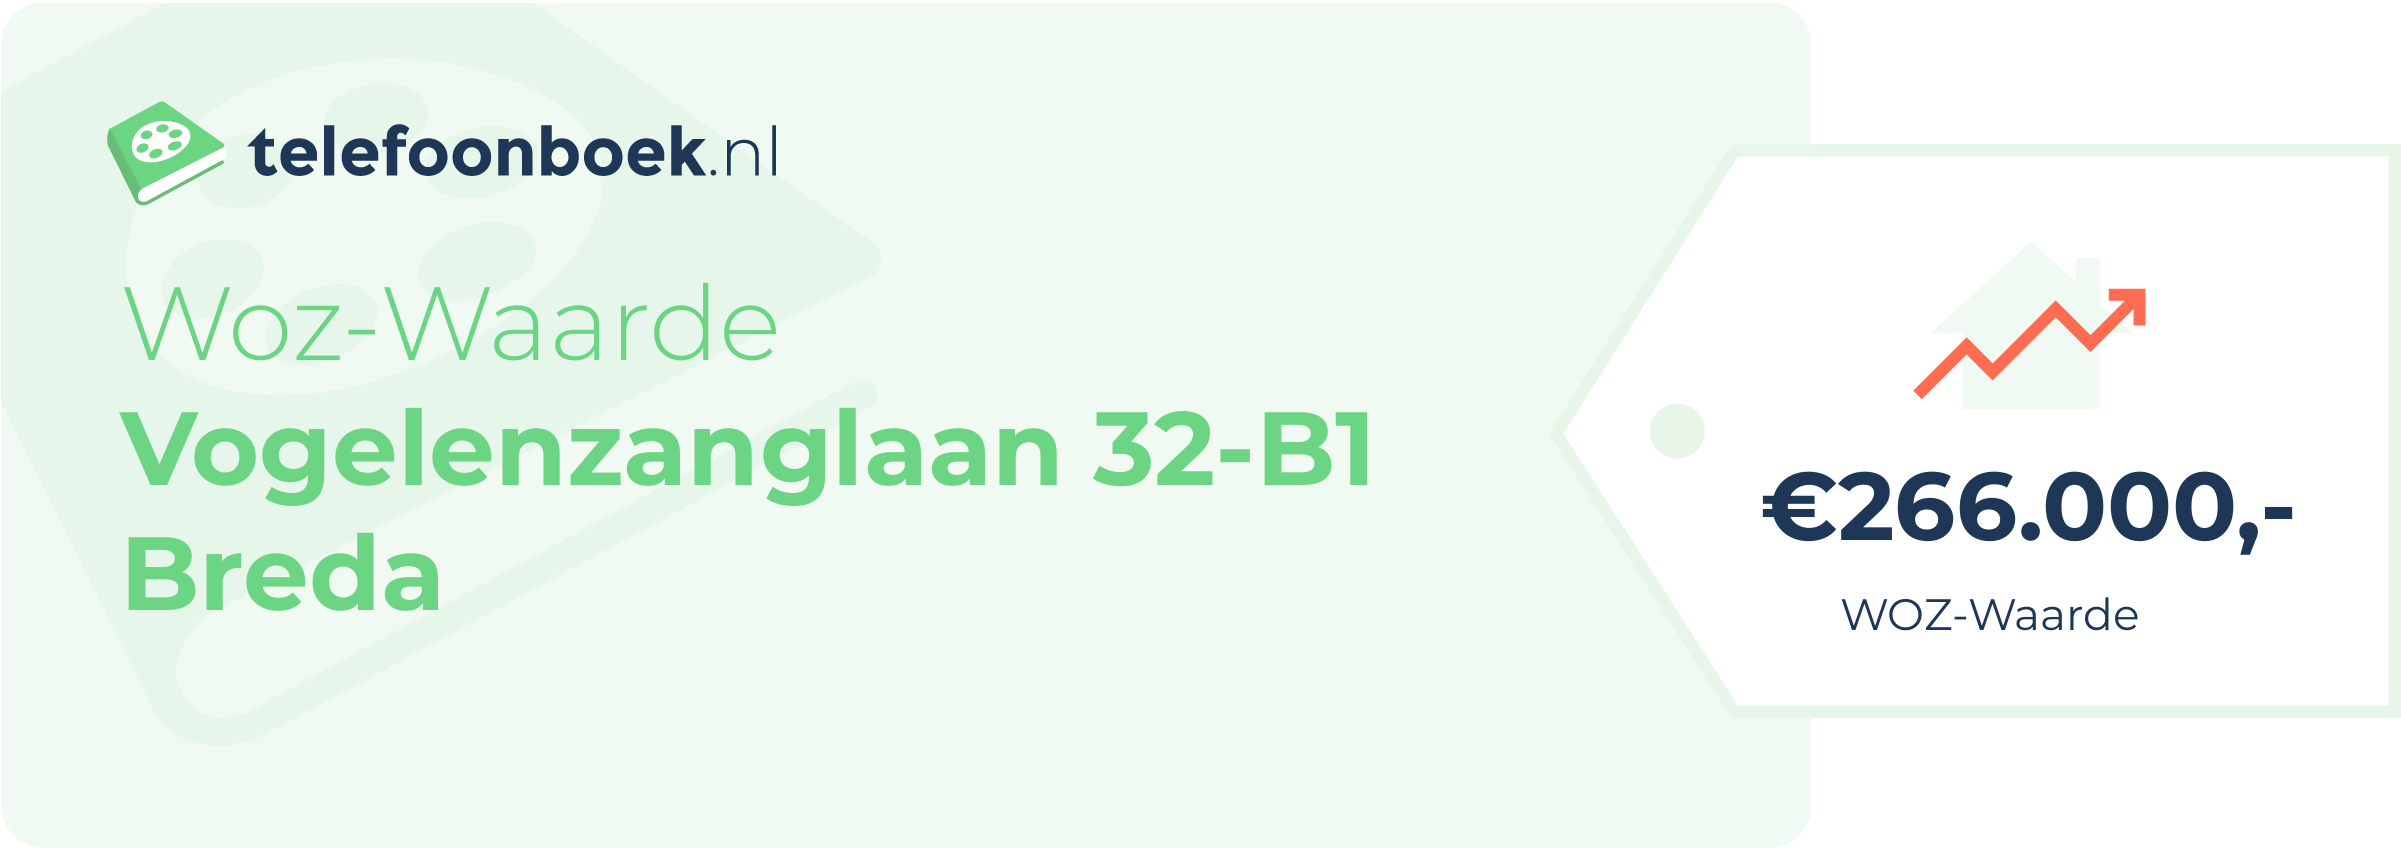 WOZ-waarde Vogelenzanglaan 32-B1 Breda